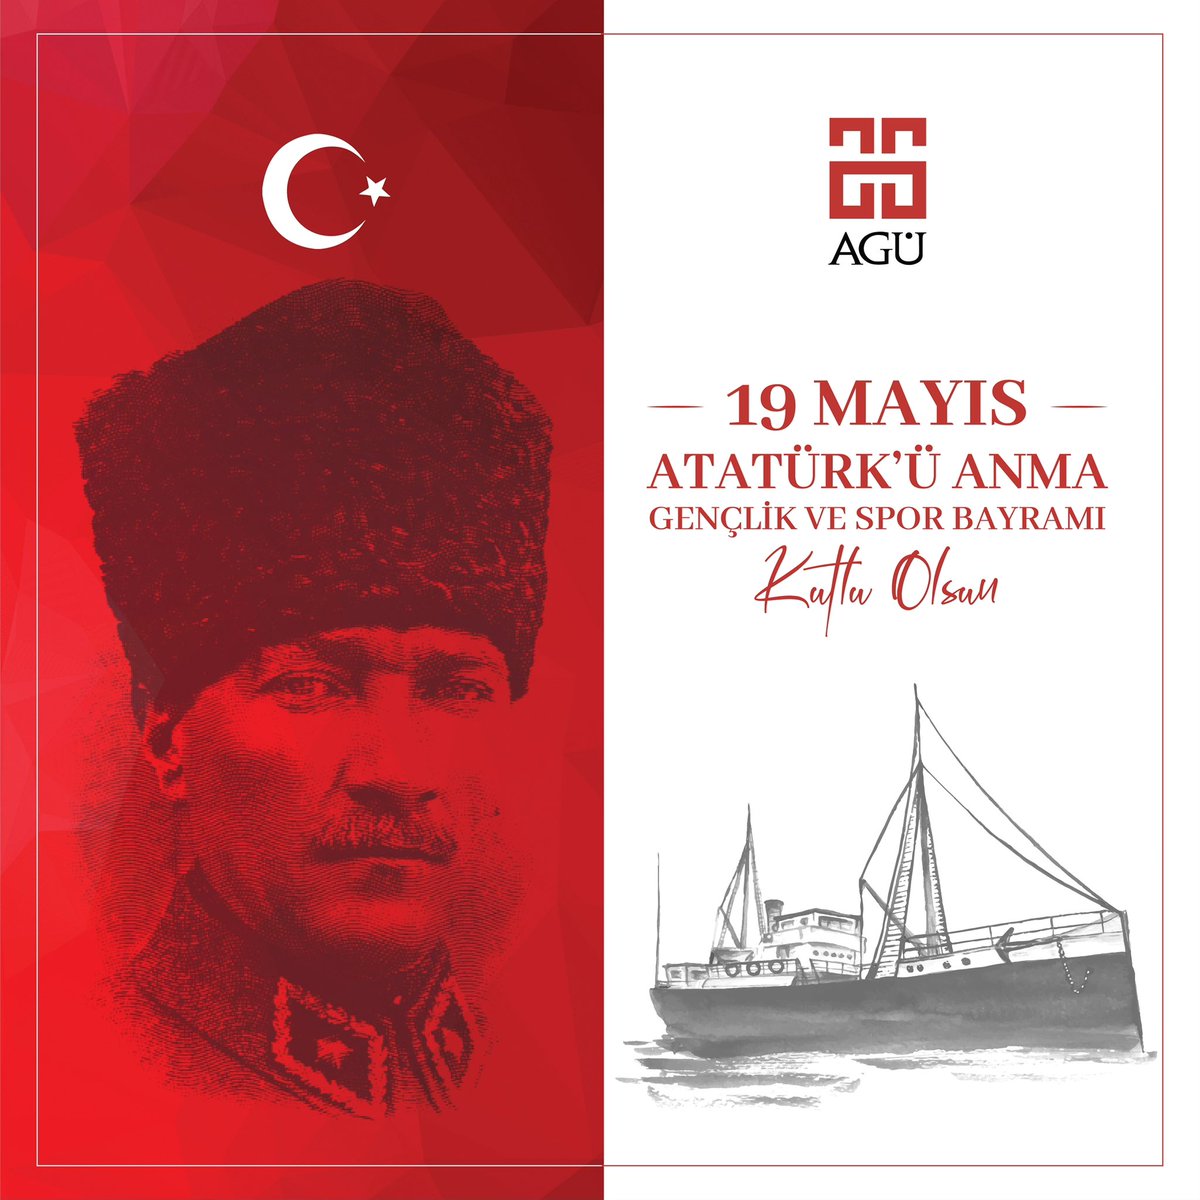 19 Mayıs Atatürk’ü Anma Gençlik ve Spor Bayramı Kutlu Olsun 🇹🇷